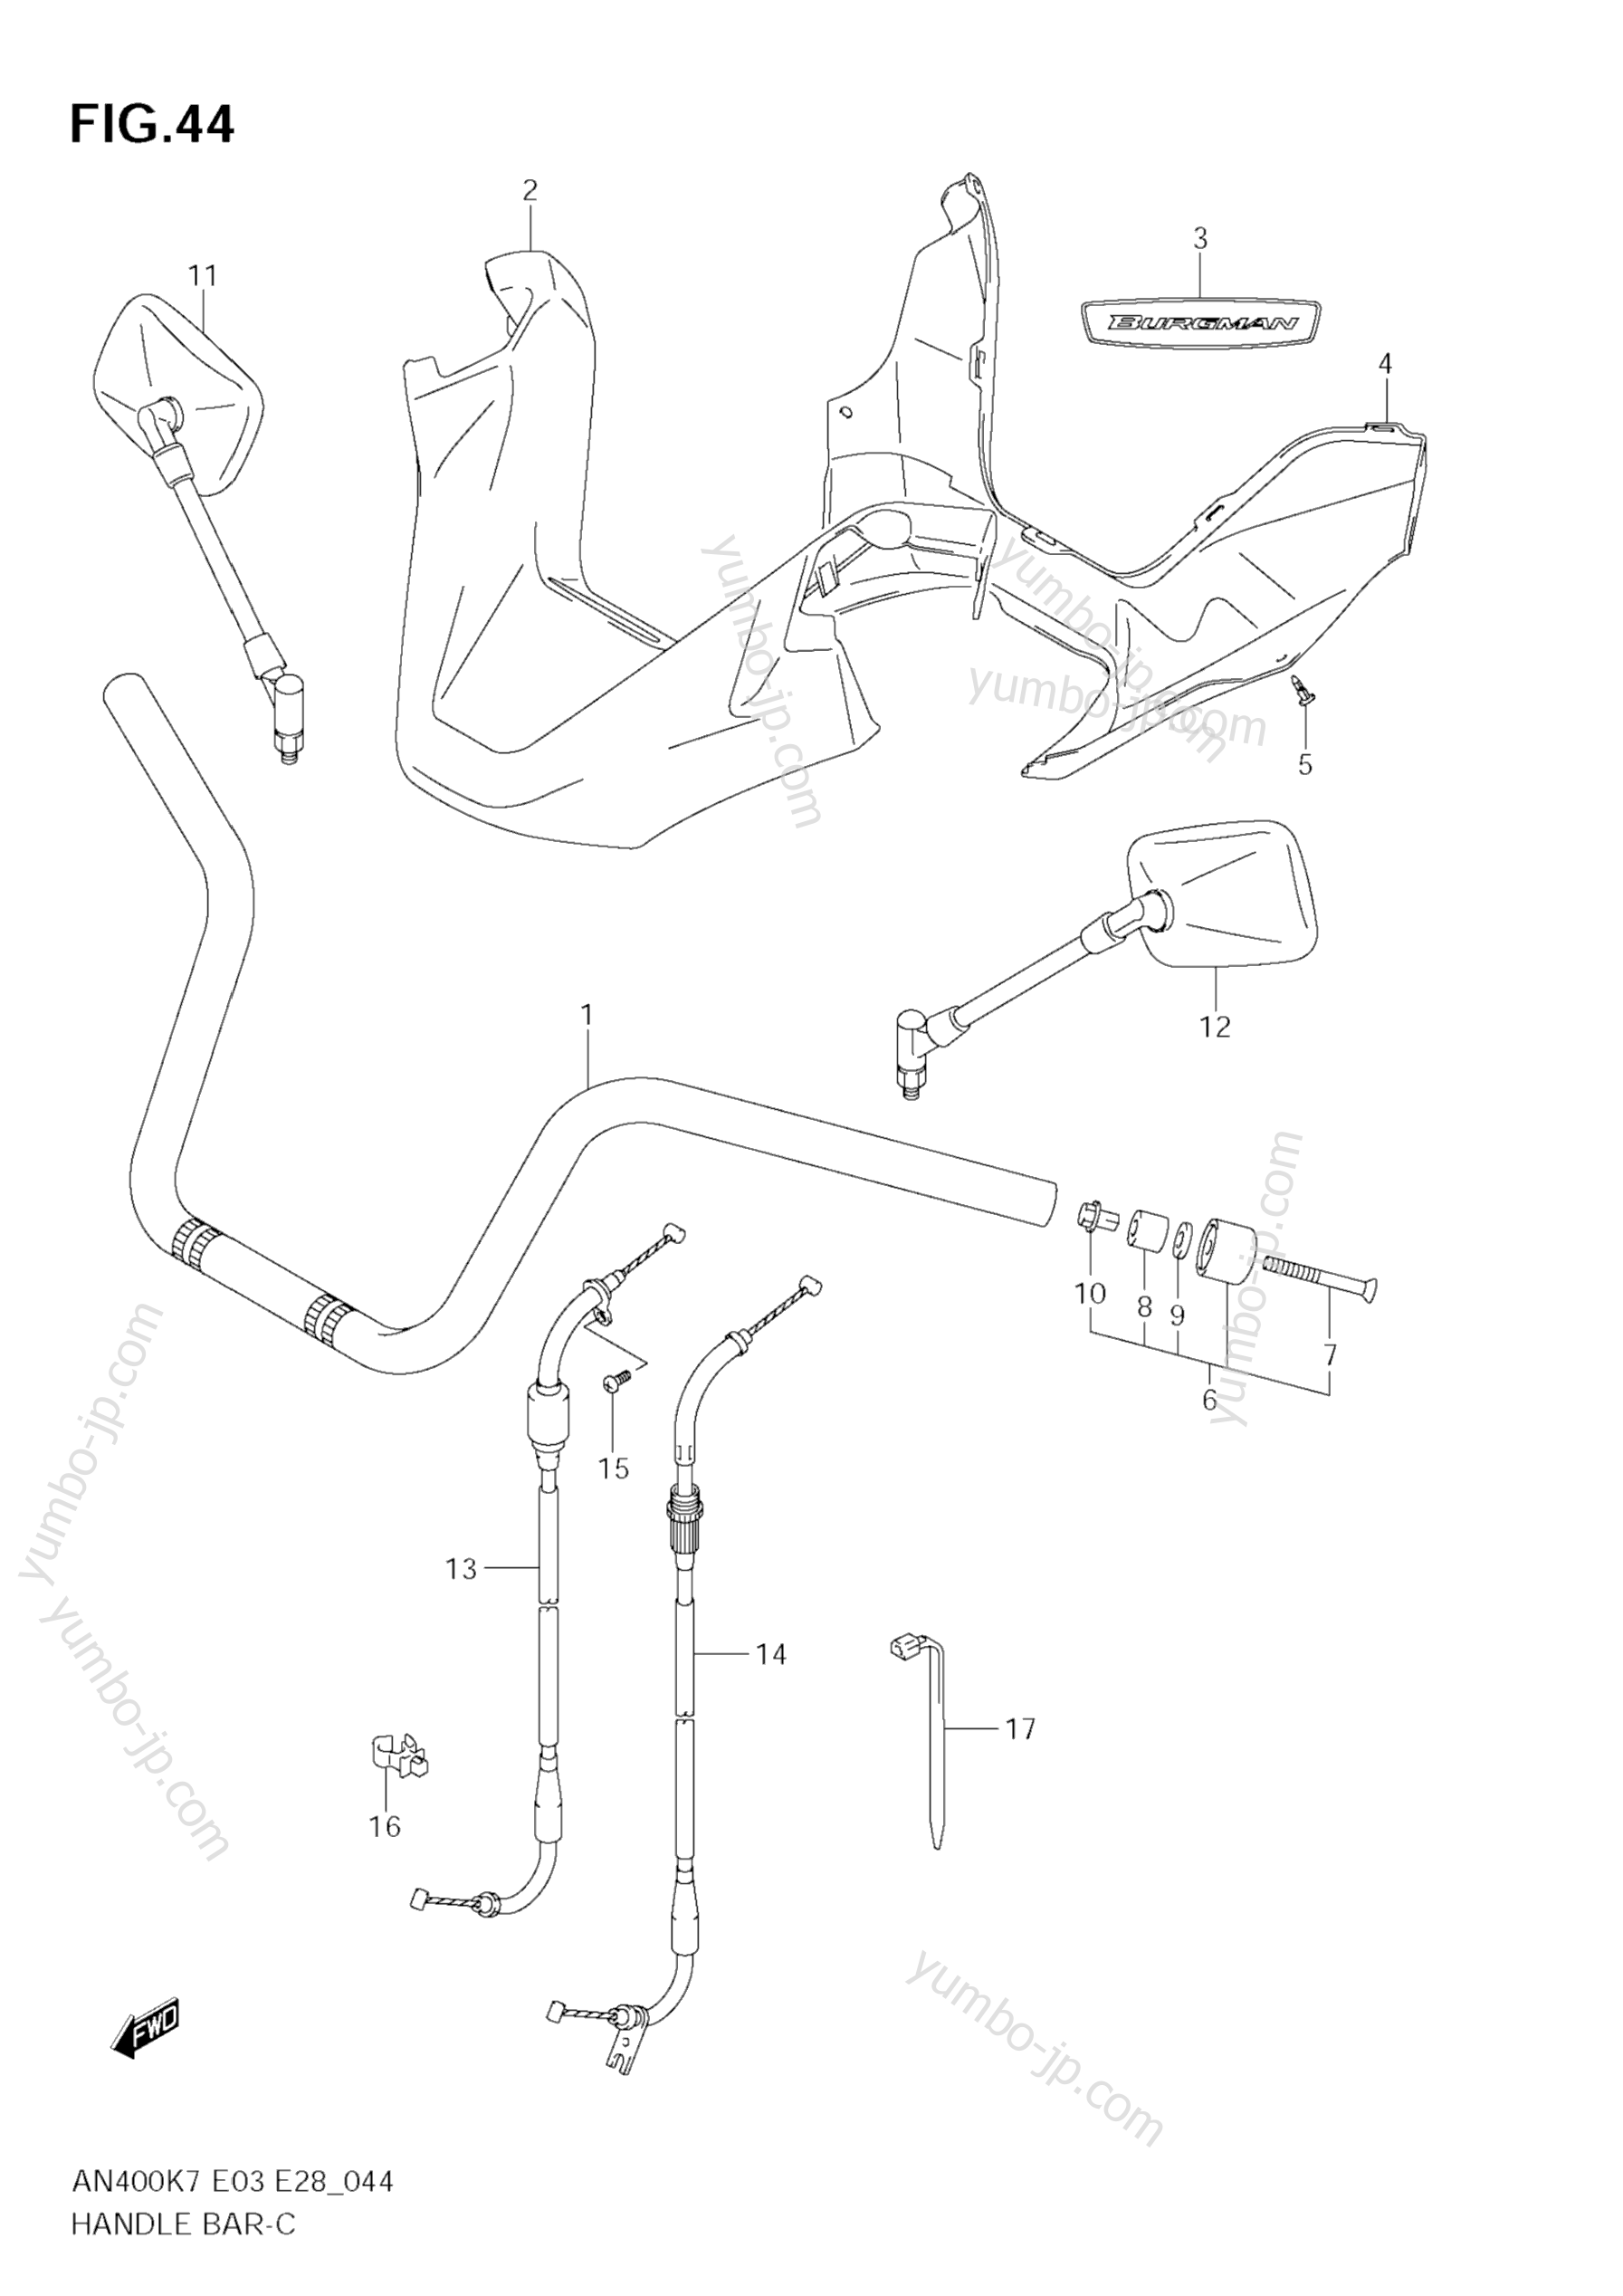 Румпель (рукоятка управления) для скутеров SUZUKI Burgman (AN400A) 2009 г.